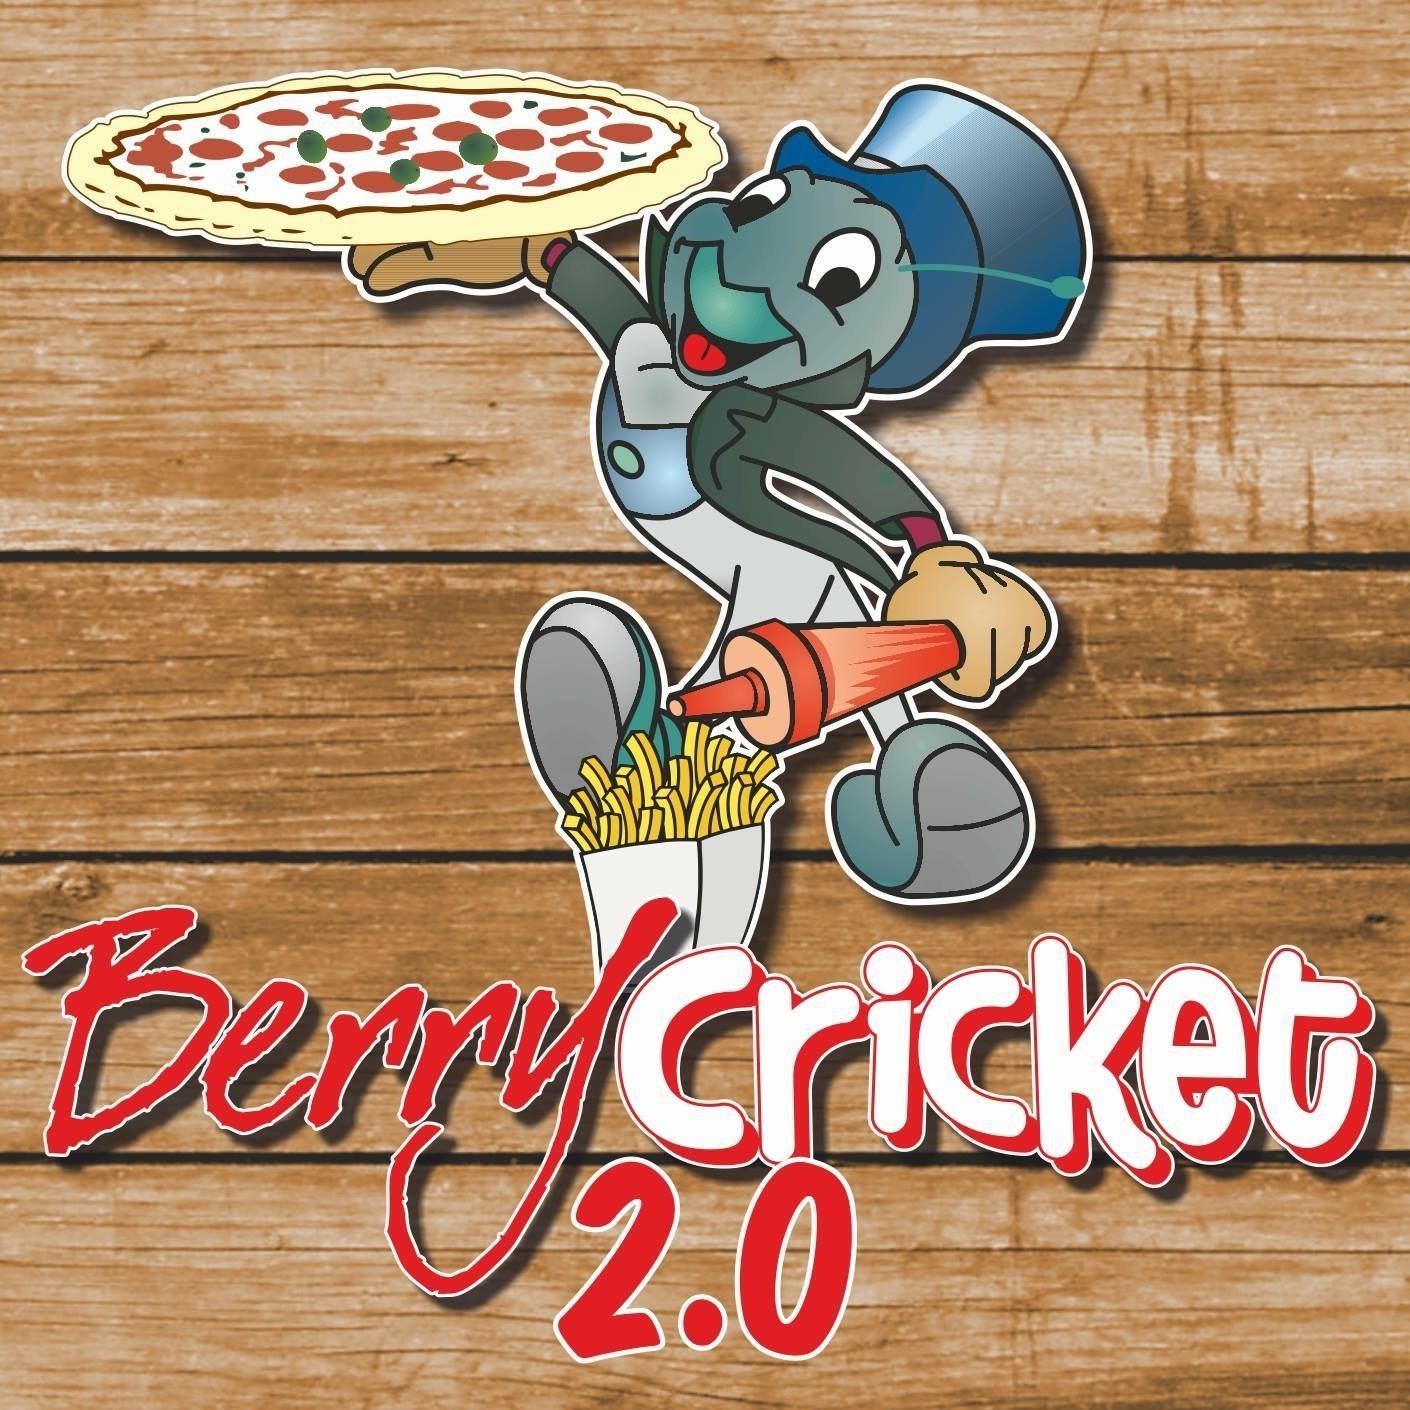 Berry Cricket 2.0, Monteroni di Lecce